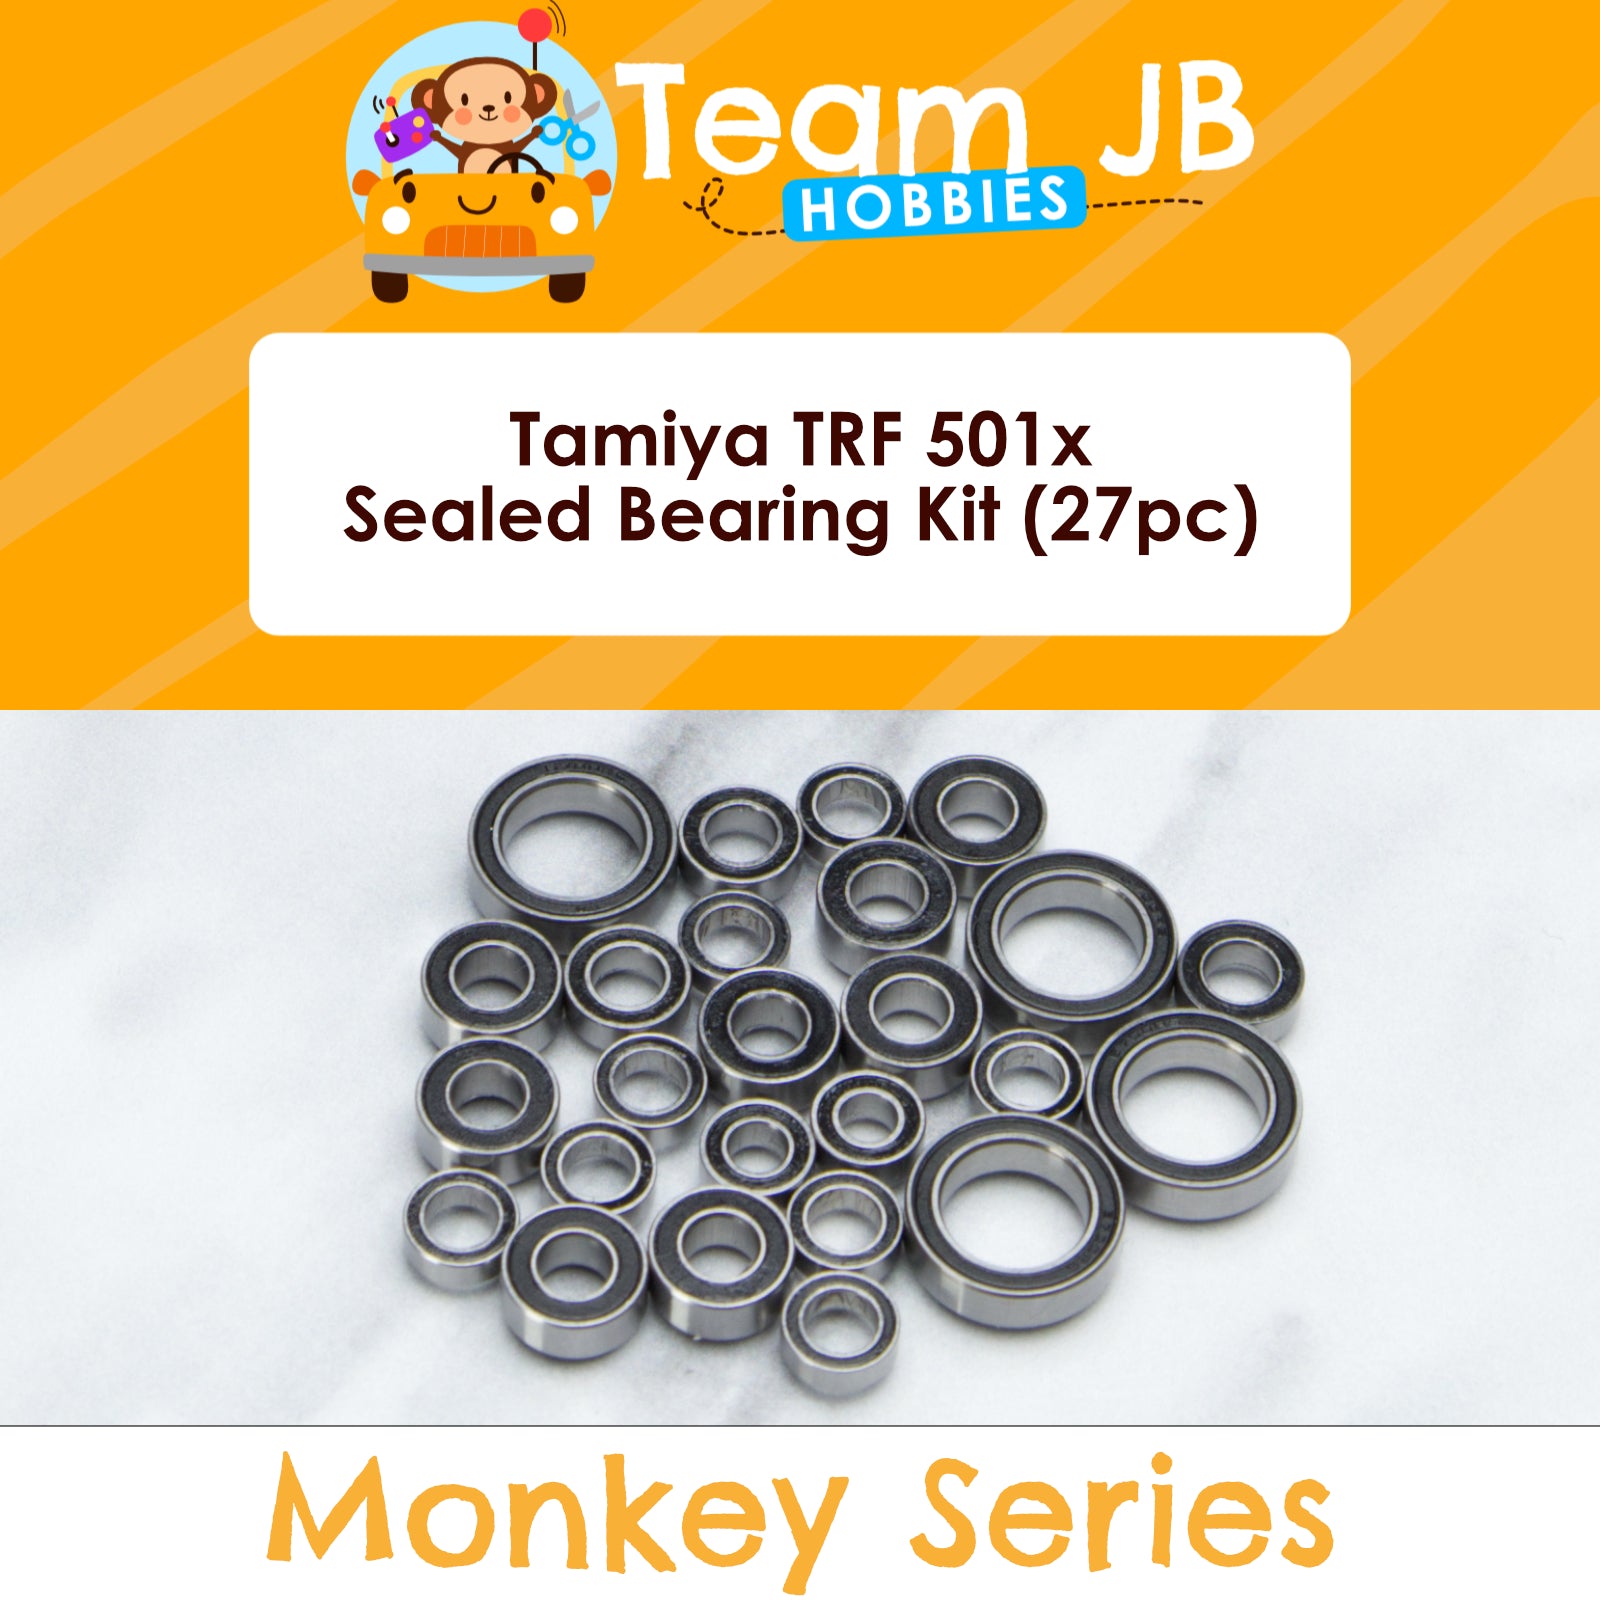 Tamiya TRF 501x - Sealed Bearing Kit